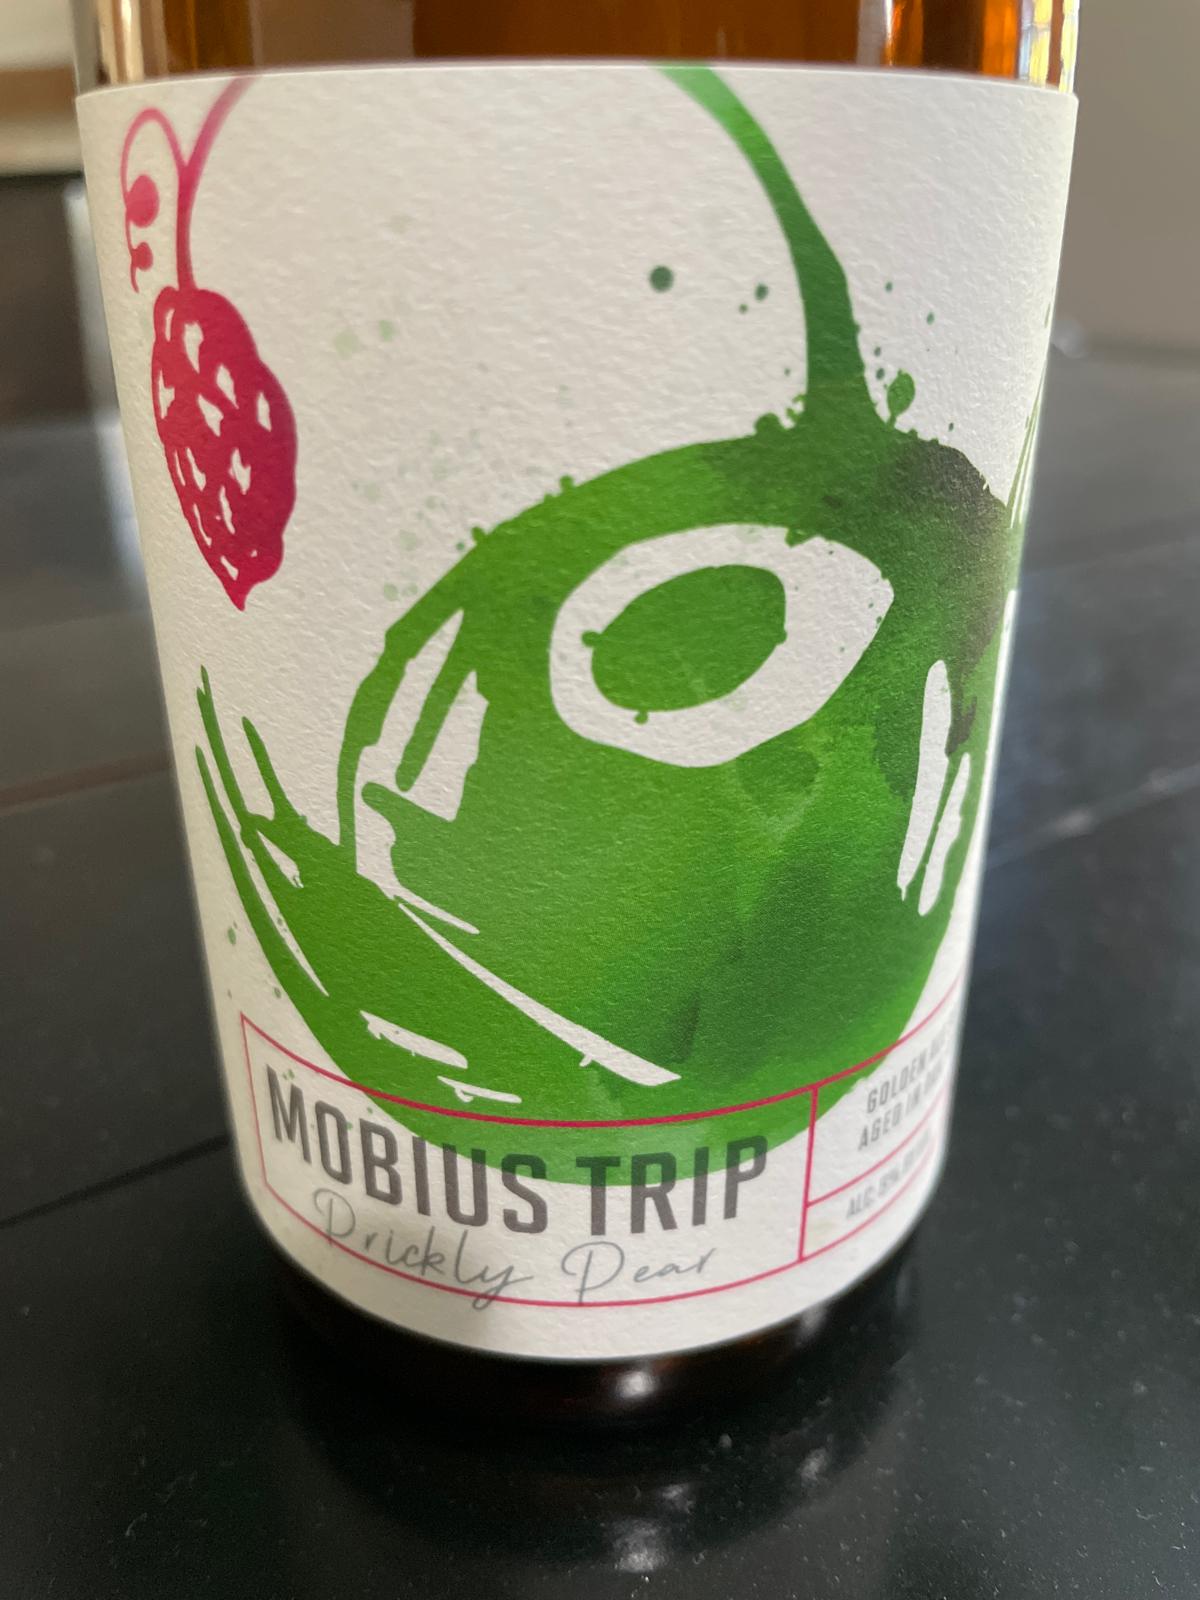 Mobius Trip - Prickly Pear